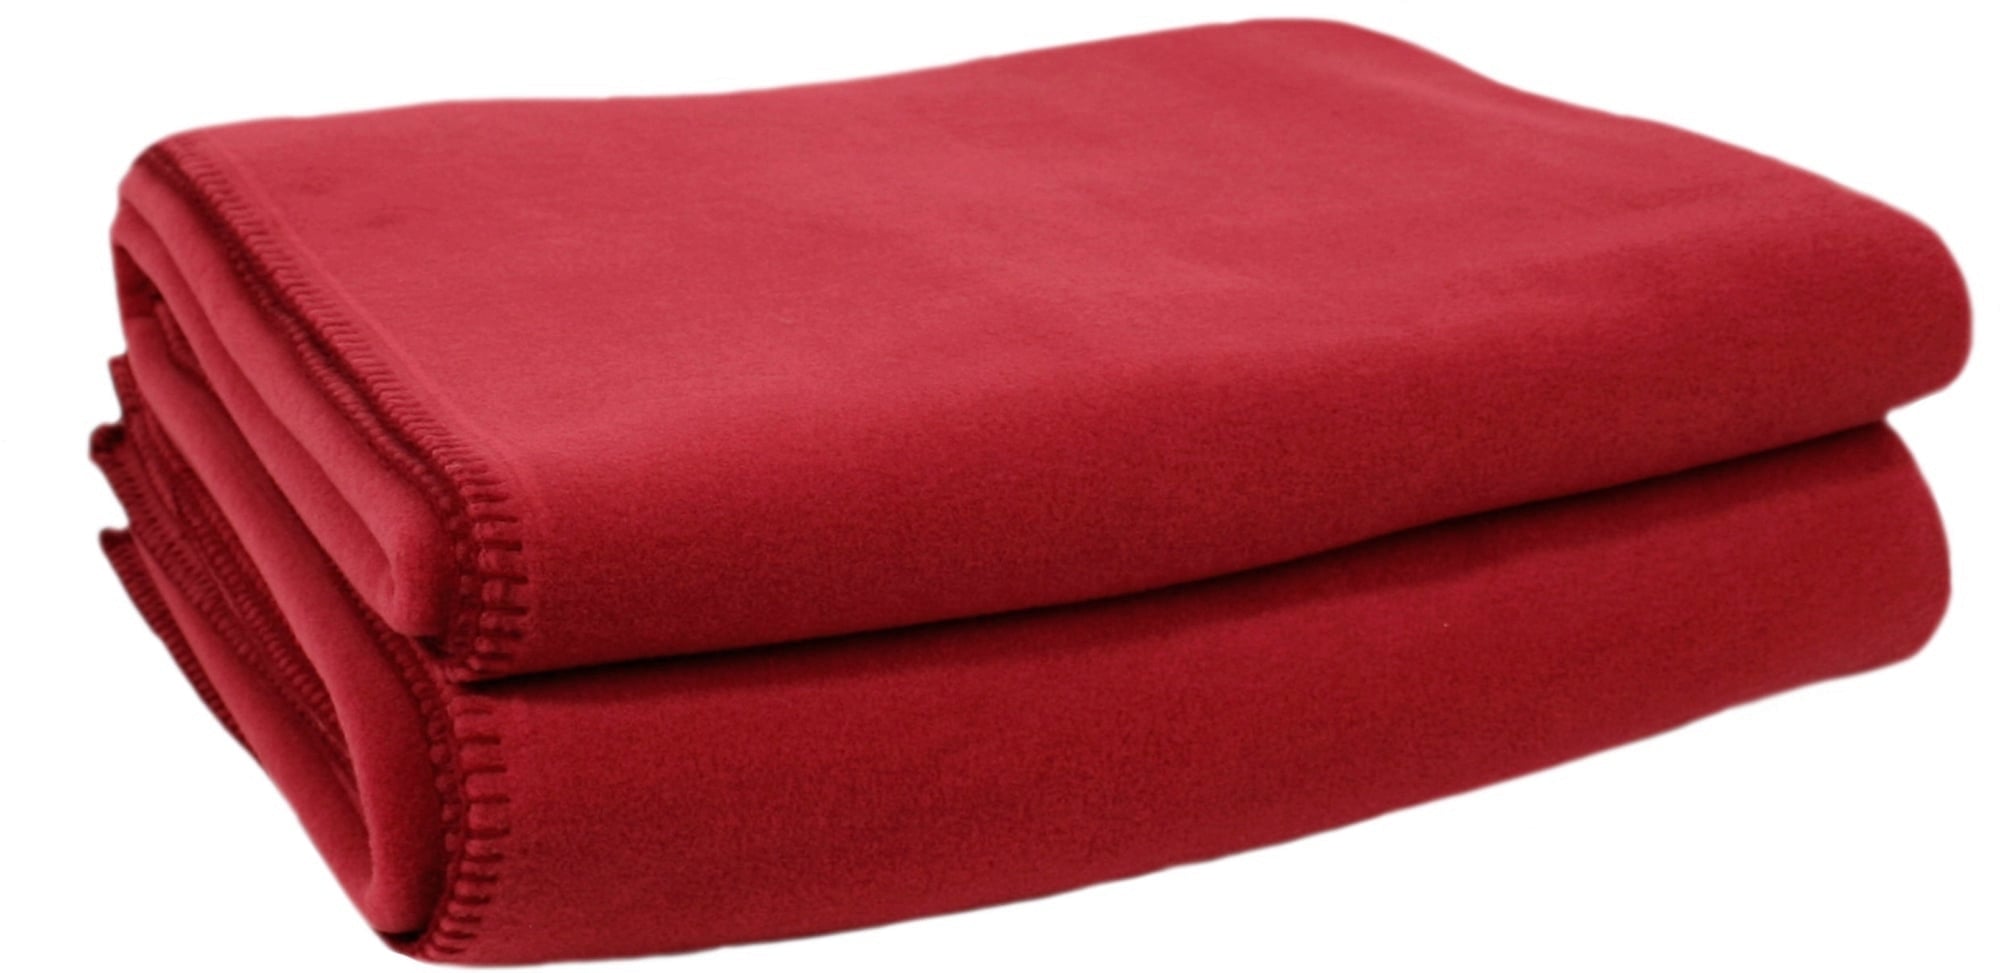 Zoeppritz Soft Fleece Blanket in Rambutan Red - Interismo UK